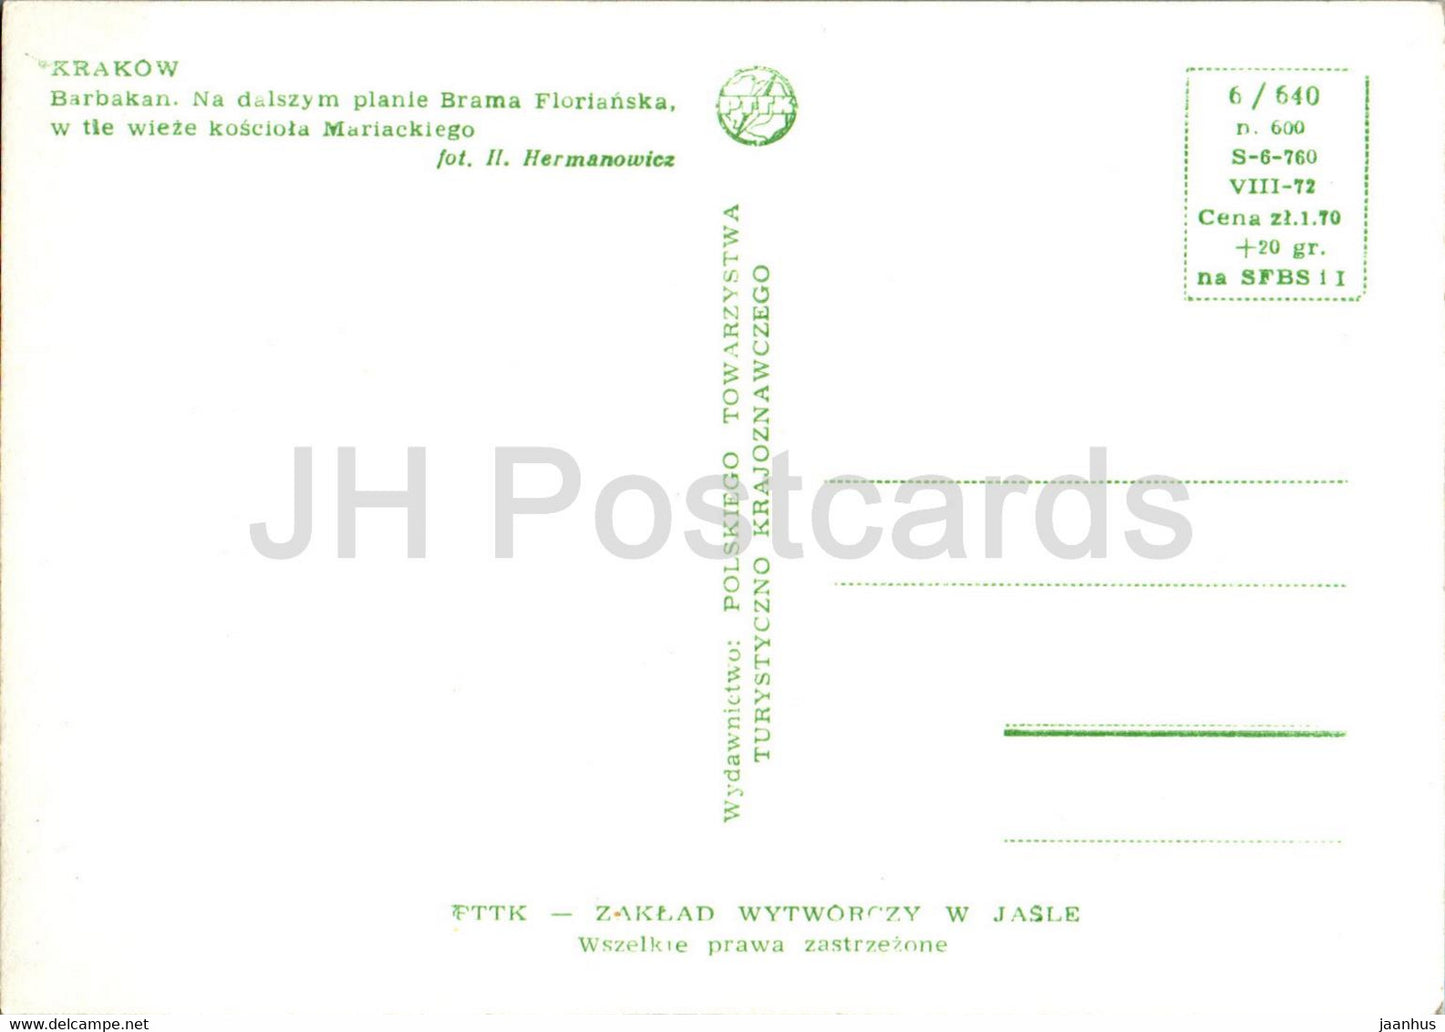 Krakow - Barbakan - Brama Florianska - old postcard - Poland - unused